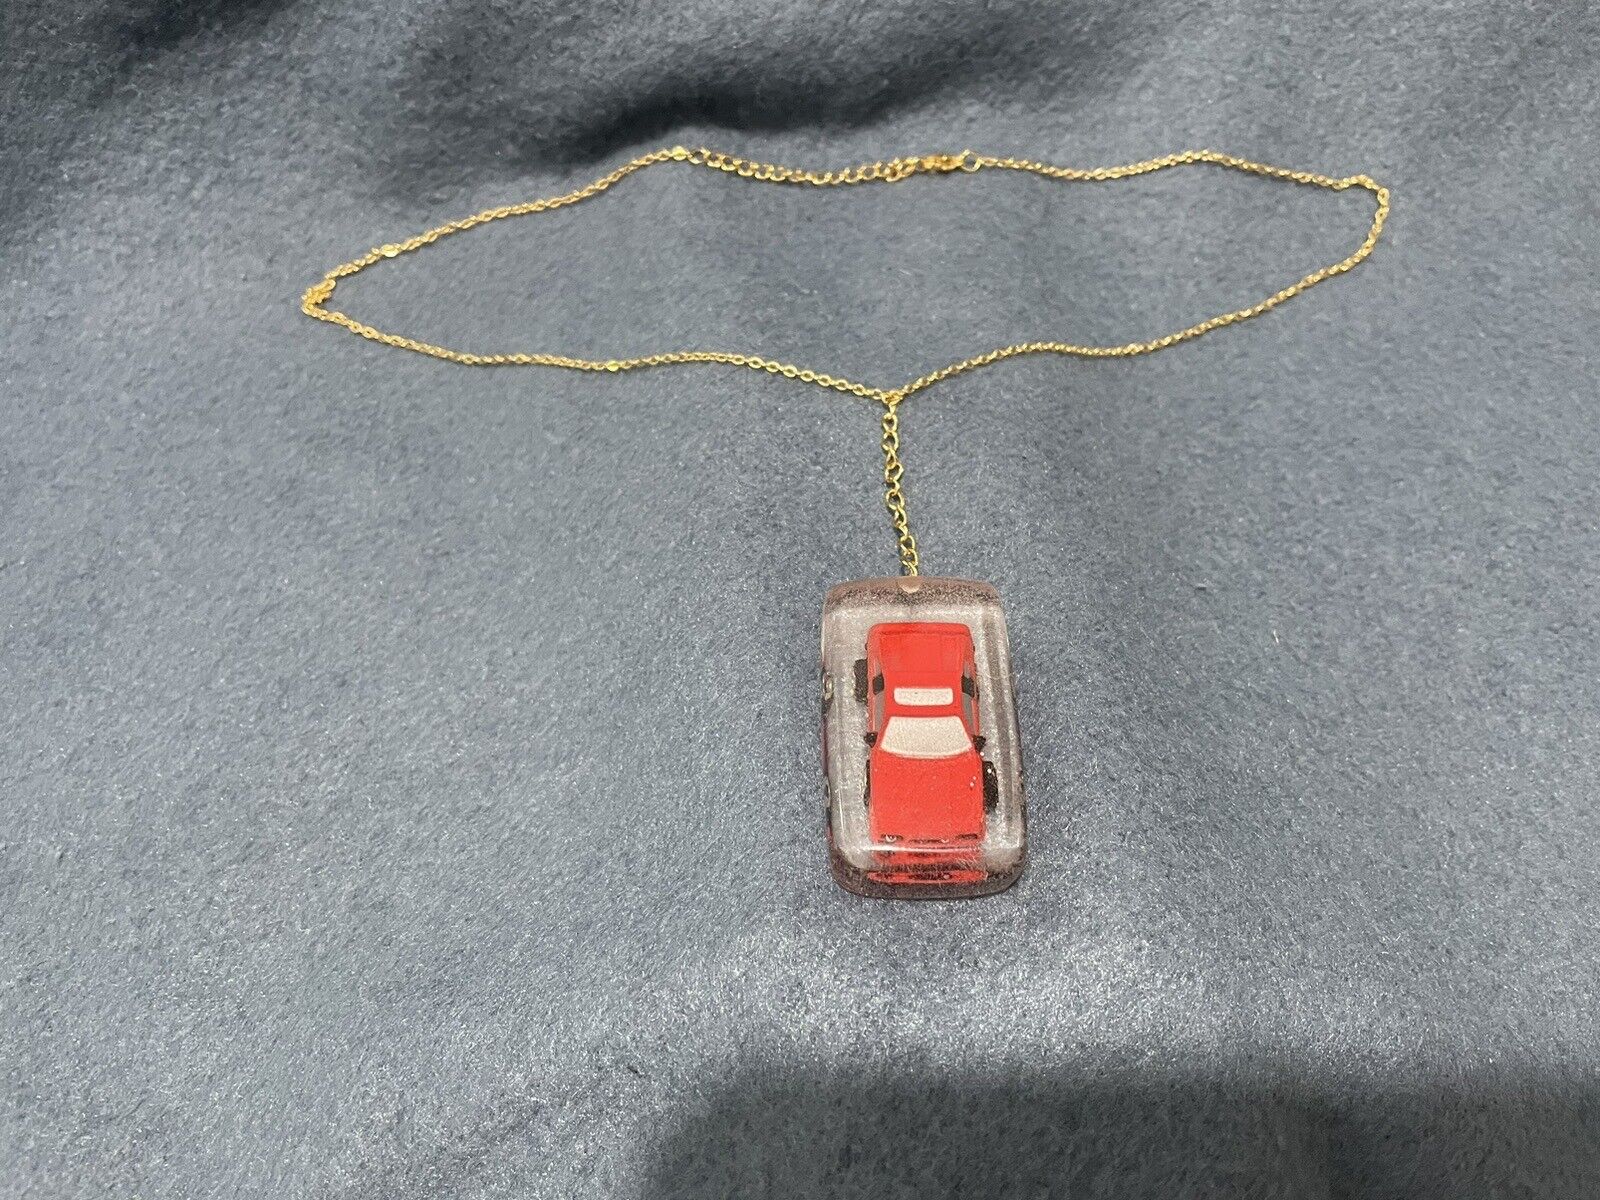 Pontiac fiero Necklace / Keychain.